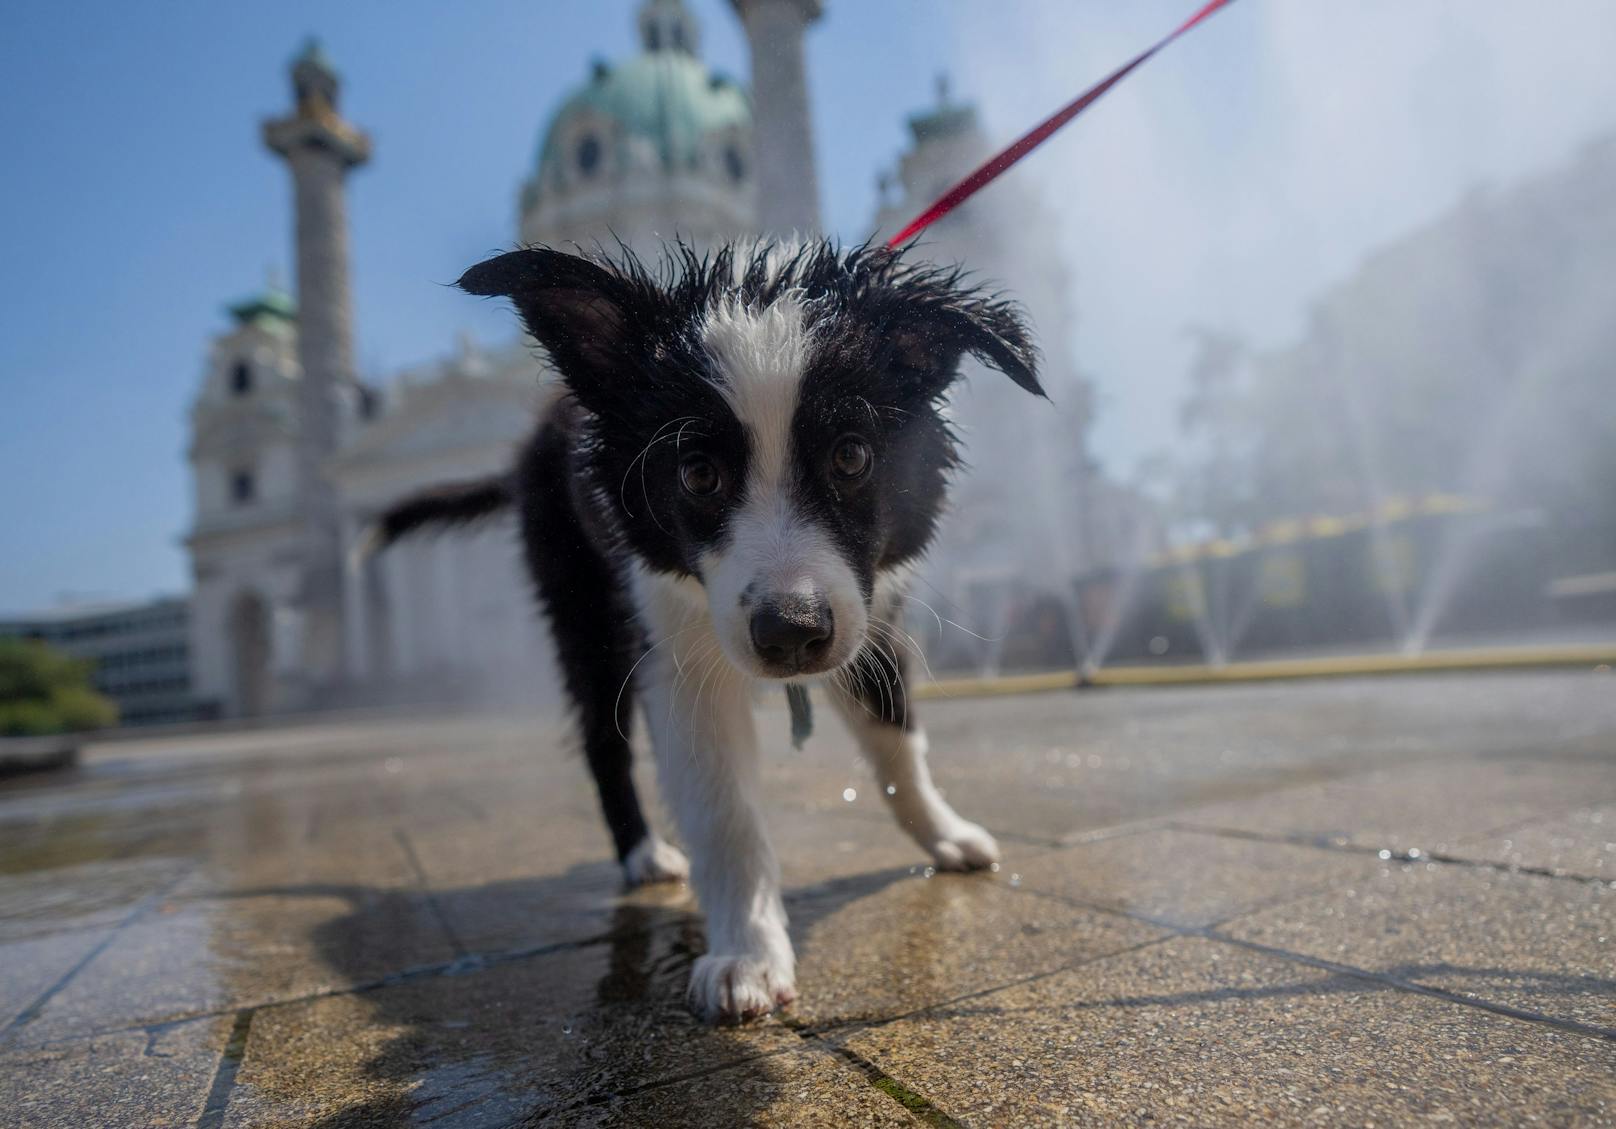 "Hundstage" in Wien! Eine Karte zeigt, wo es in Wien jetzt besonders heiß ist.